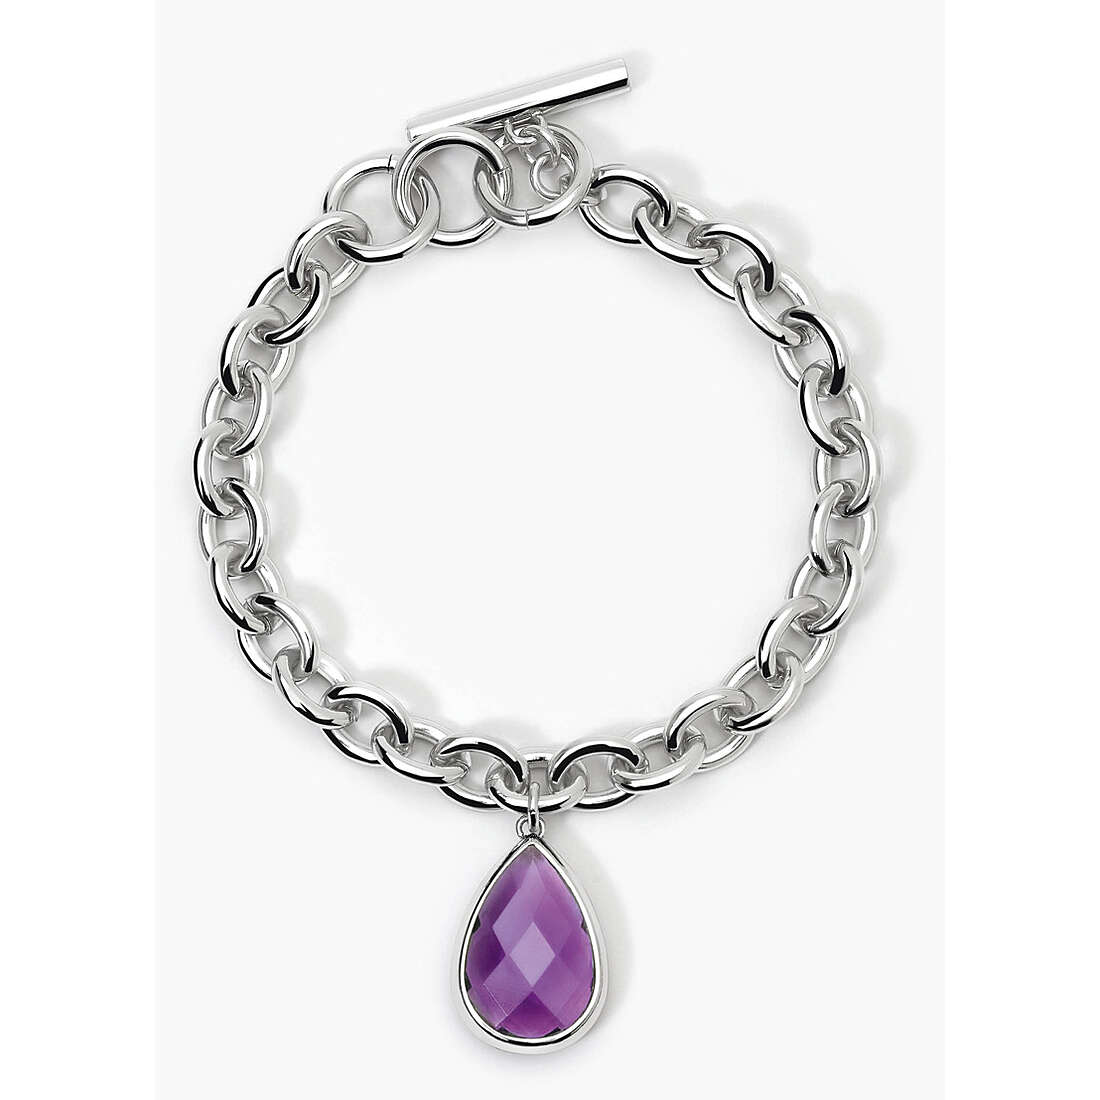 bracelet jewel Steel woman jewel Grace 232437